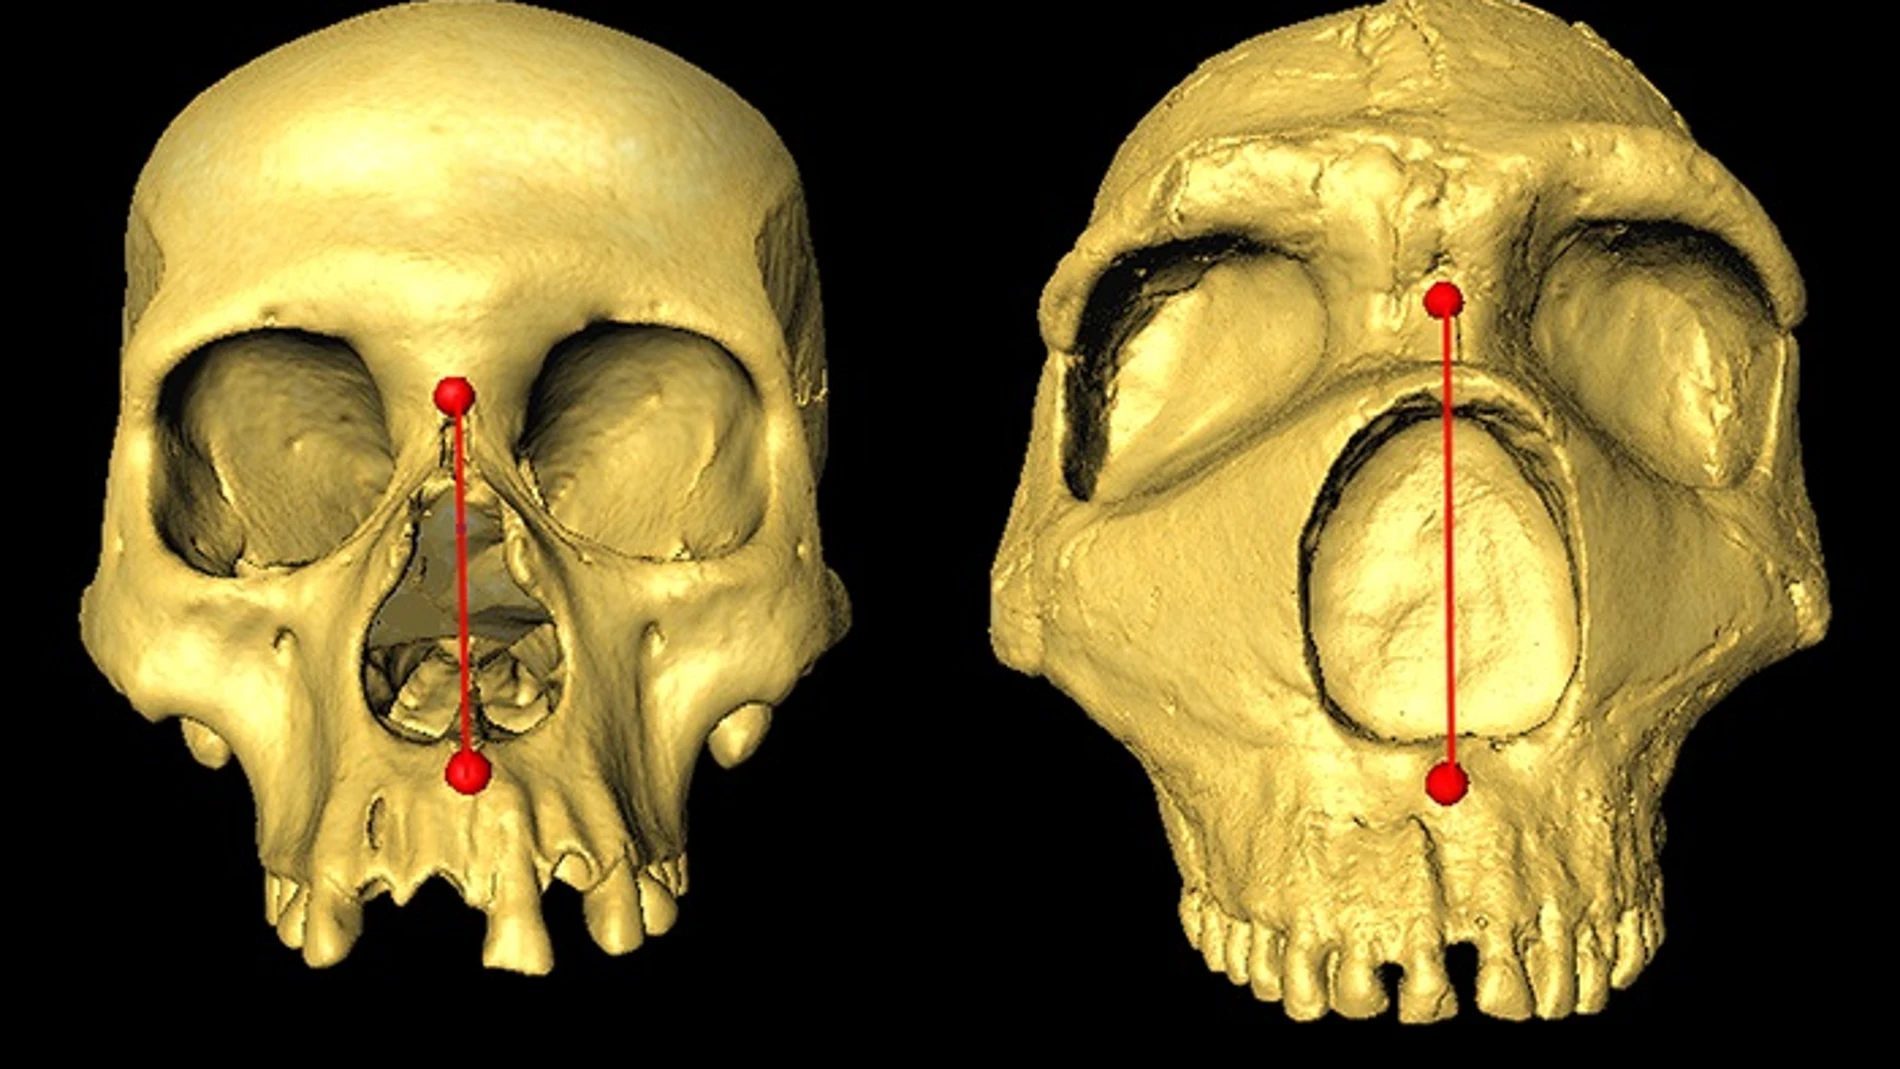 Cráneo humanos modernos y neandertales